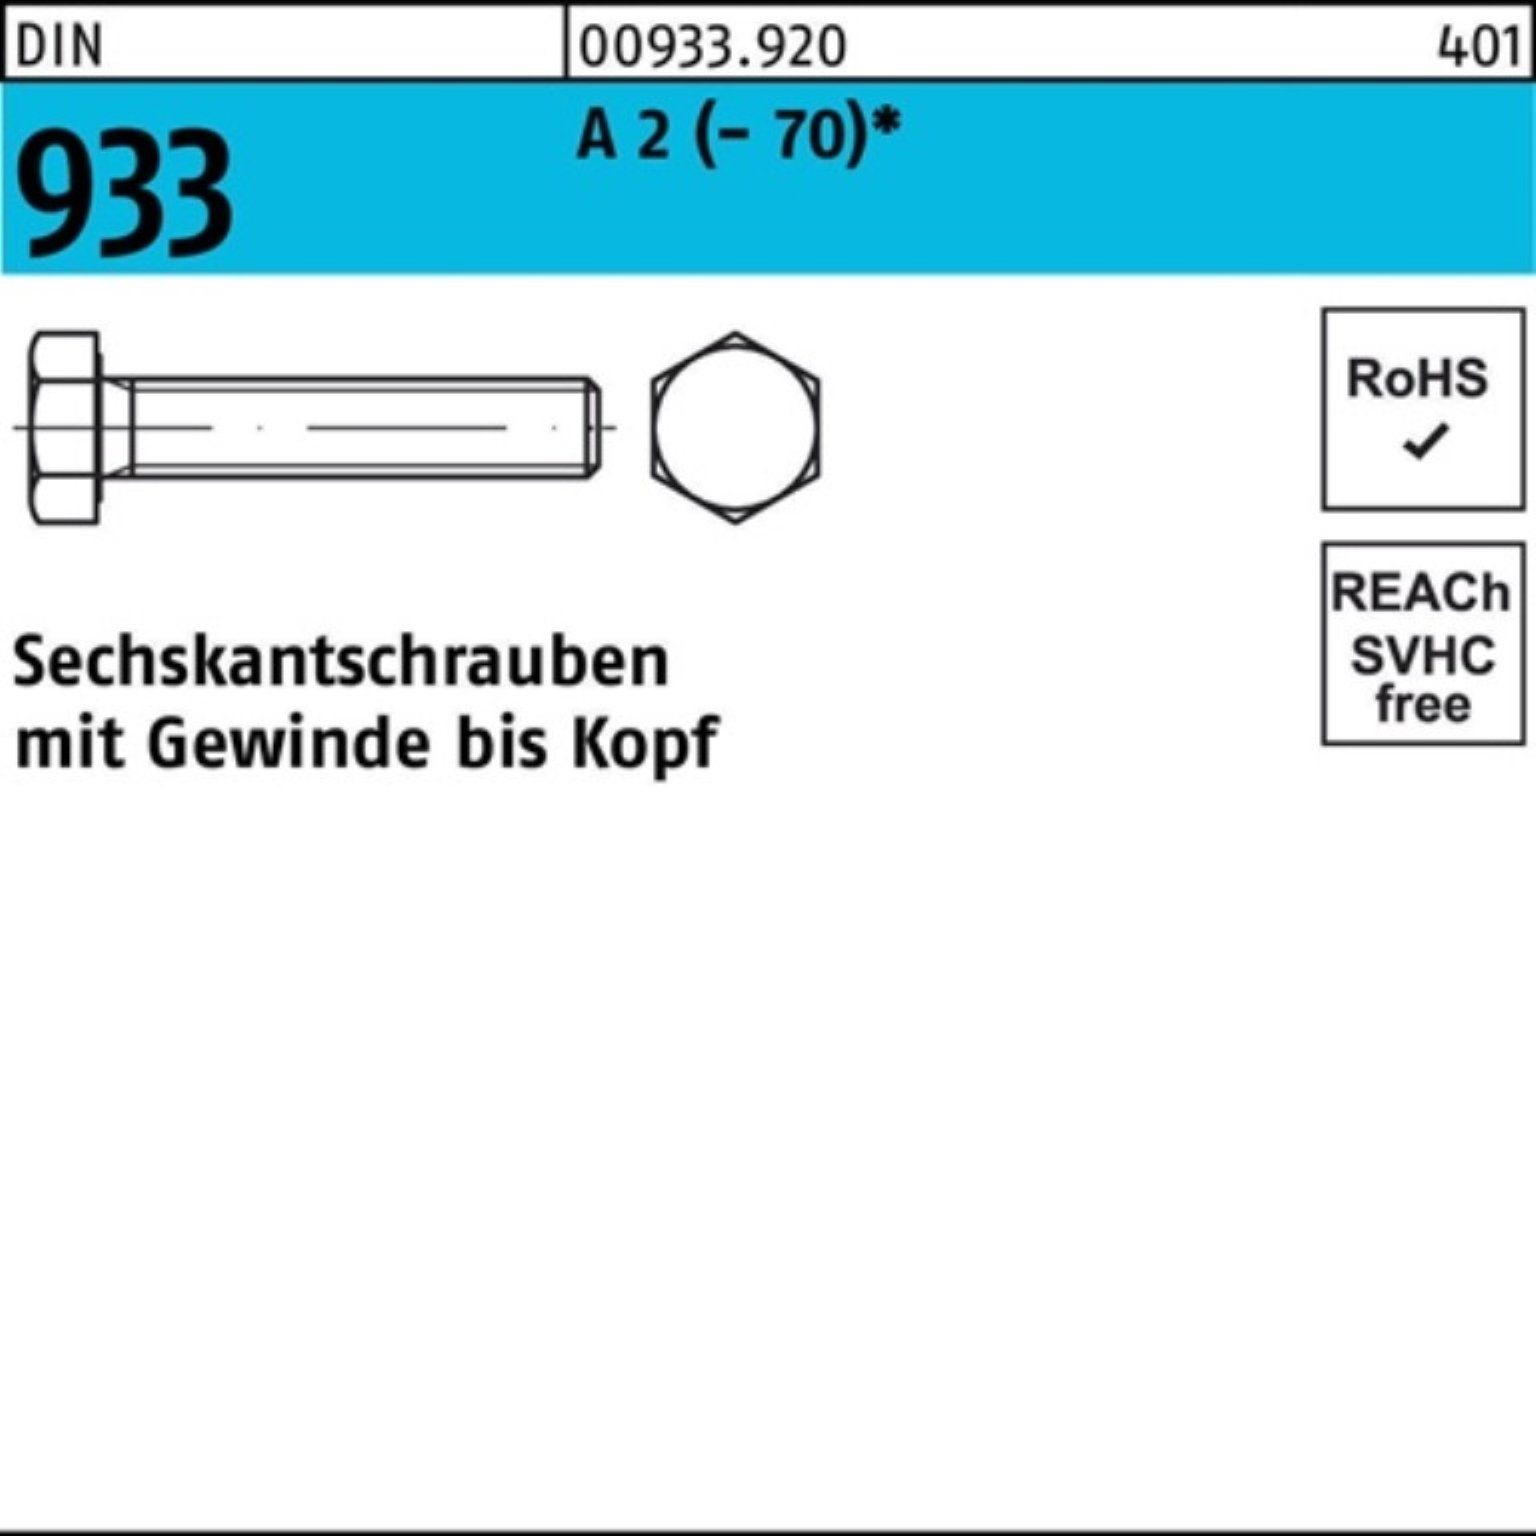 VG Pack DIN A 140 Sechskantschraube 2 (70) Stück Reyher 933 100er M16x Sechskantschraube 25